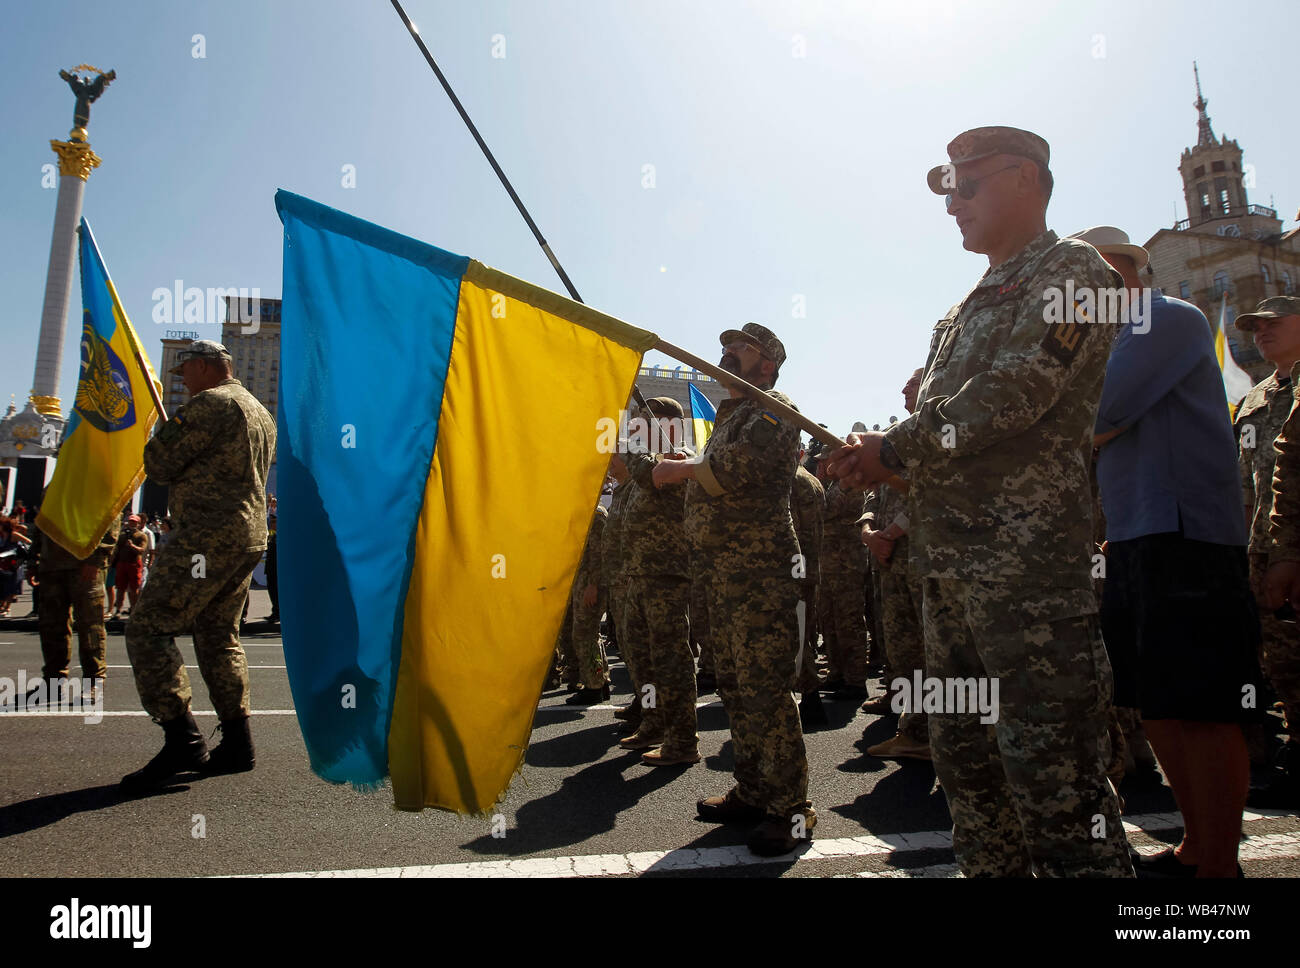 Ein ukrainischer Offizier hält eine ukrainische Flagge während am Platz der Unabhängigkeit während des Jubiläums marschieren. Ukraine markiert den 28. Jahrestag der Tag der Unabhängigkeit von der Sowjetunion seit 1991 am 24. August 2019. Stockfoto